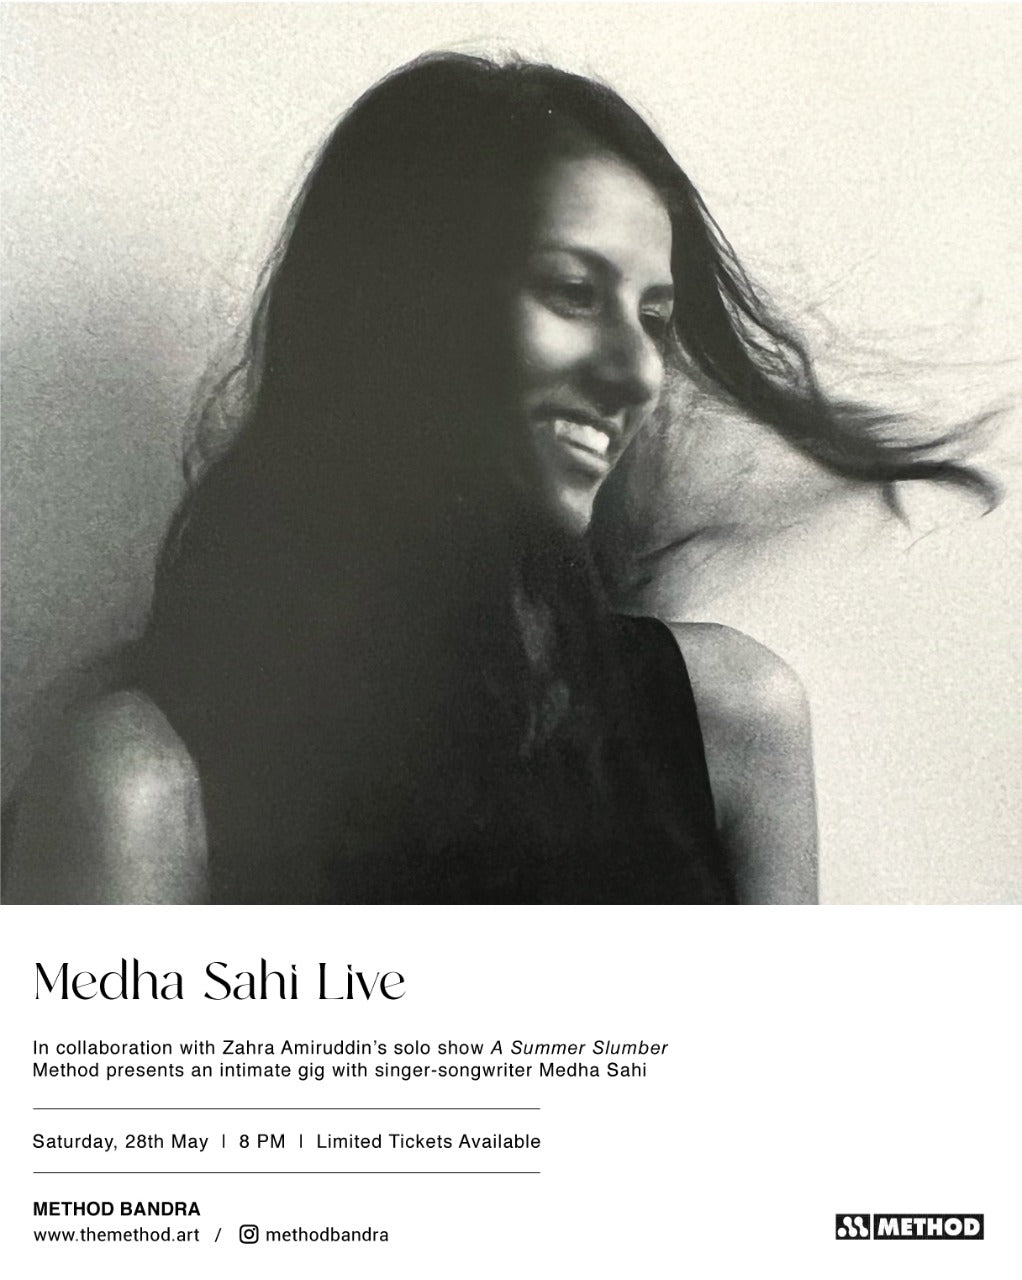 Medha Sahi Live at Method Bandra